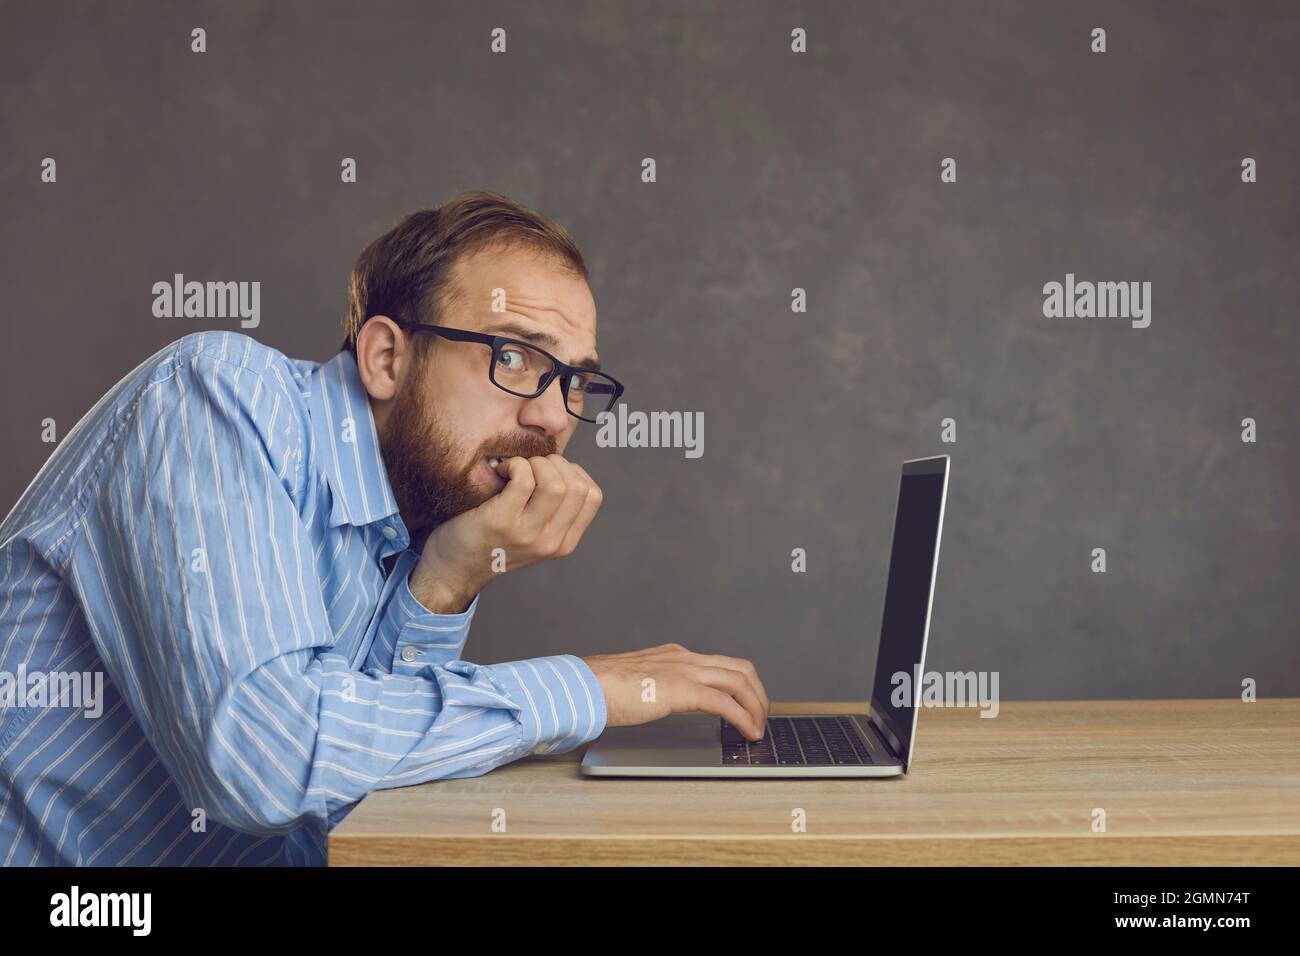 Erschrocken gestresster Mann, der einen Fehler gemacht hat, Nägel beißend, sitzend am Schreibtisch mit Laptop Stockfoto